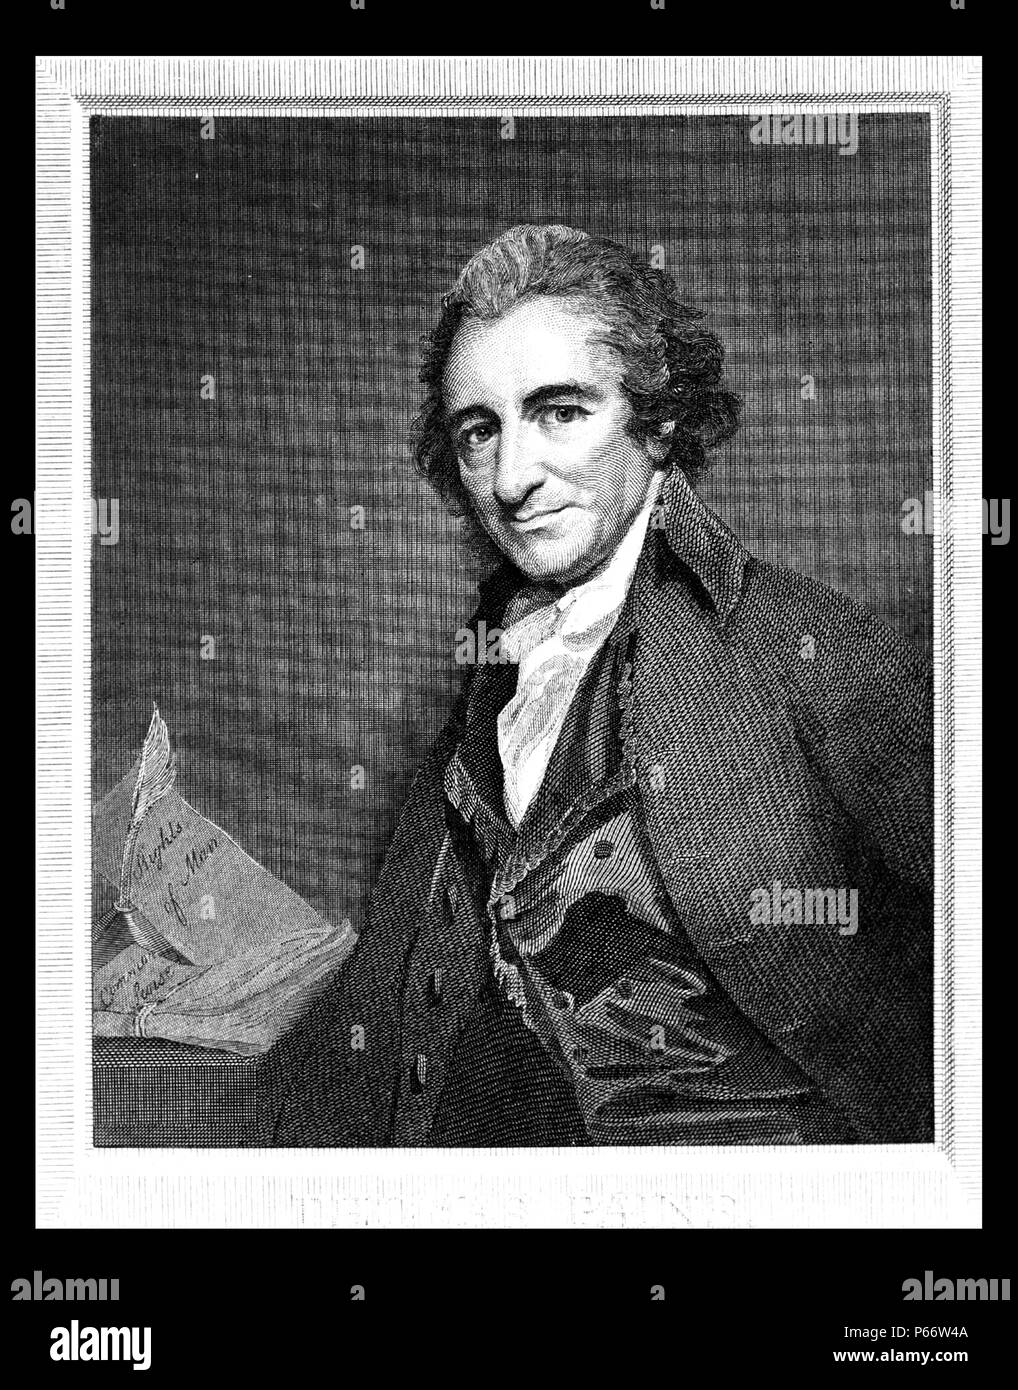 Thomas Paine print by William Sharp, 1749-1824, grabador. Thomas Paine, retrato de media longitud, mirando hacia la izquierda. Foto de stock